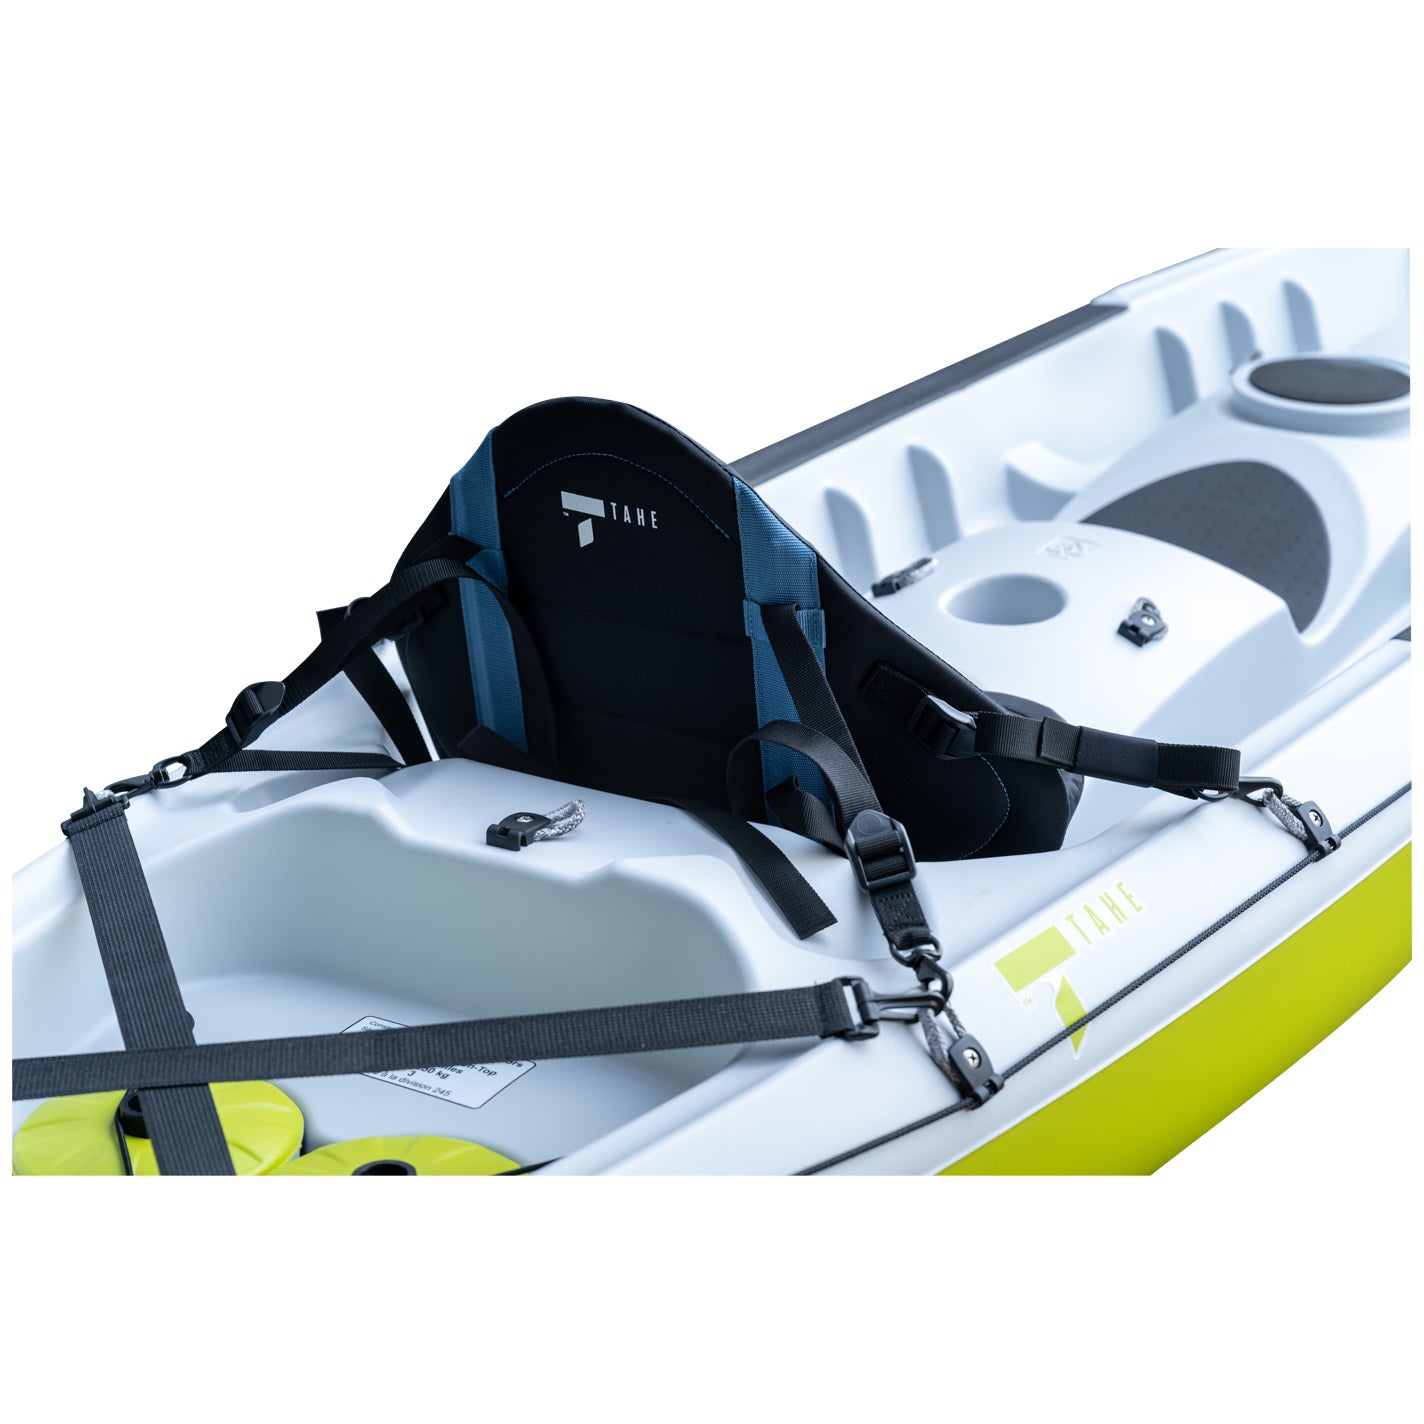 TAHE Standard Kayak Back Rest